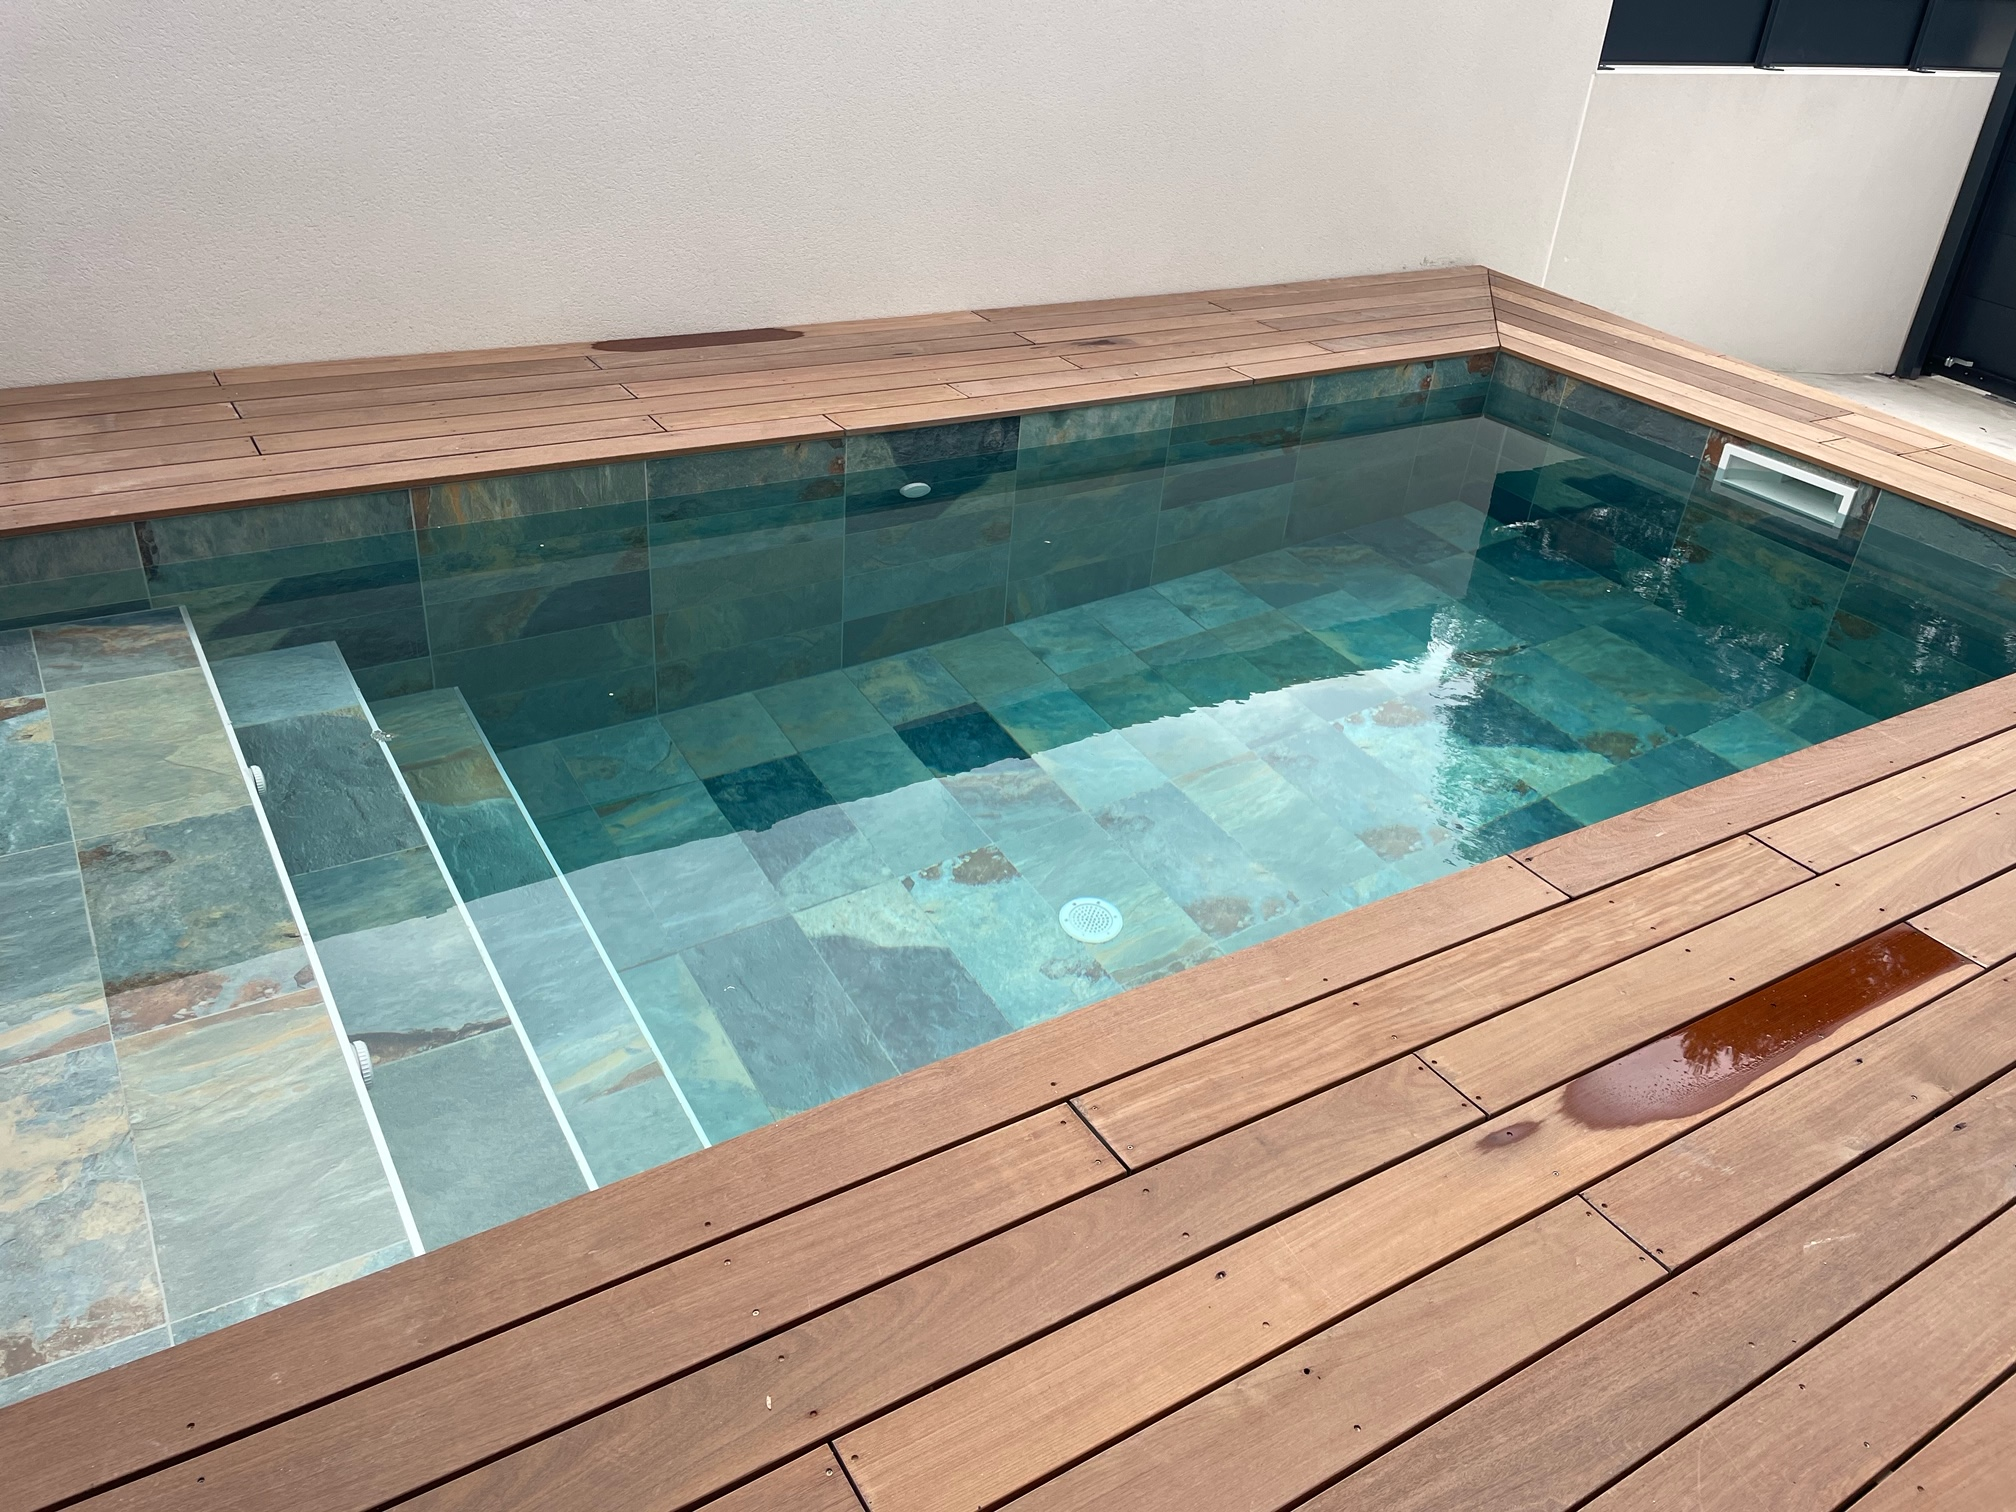 Lot de 8.64 m² - Carrelage piscine effet pierre naturelle OXFORD BALI VERT 30x60 cm R9 - 8.64 m² - 1